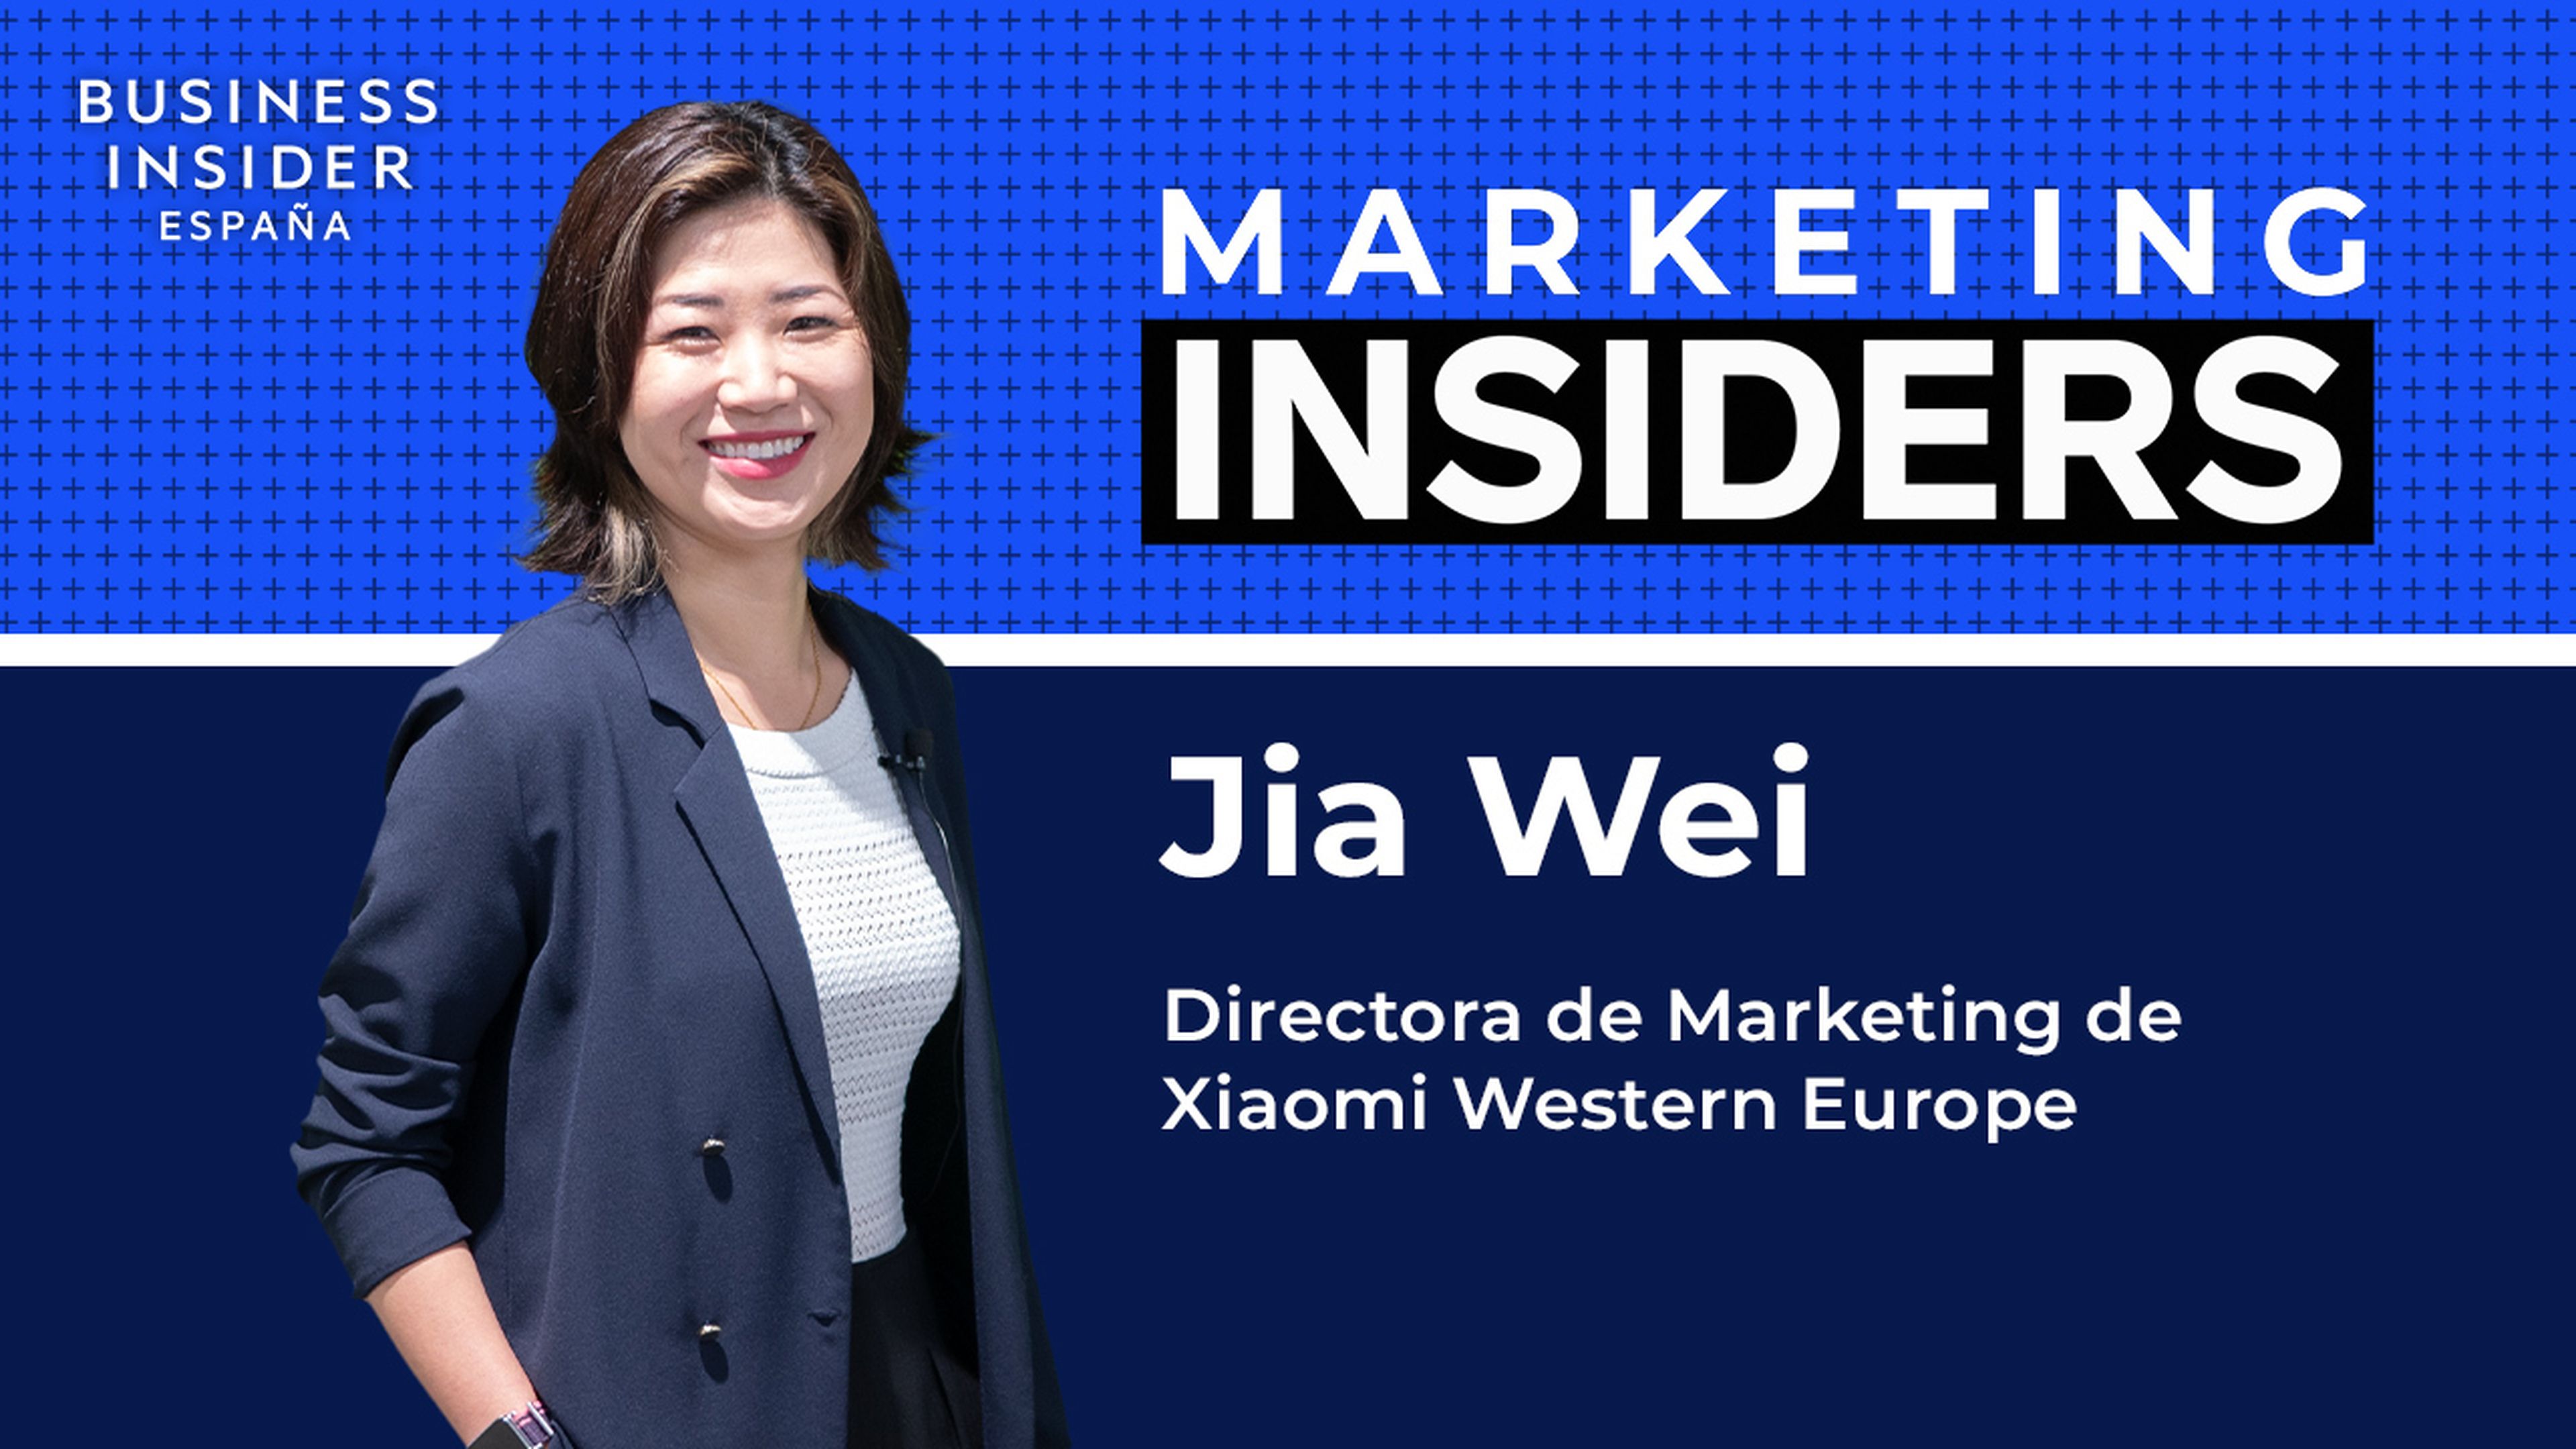 Jia Wei, Directora de Marketing de Xiaomi Western Europe